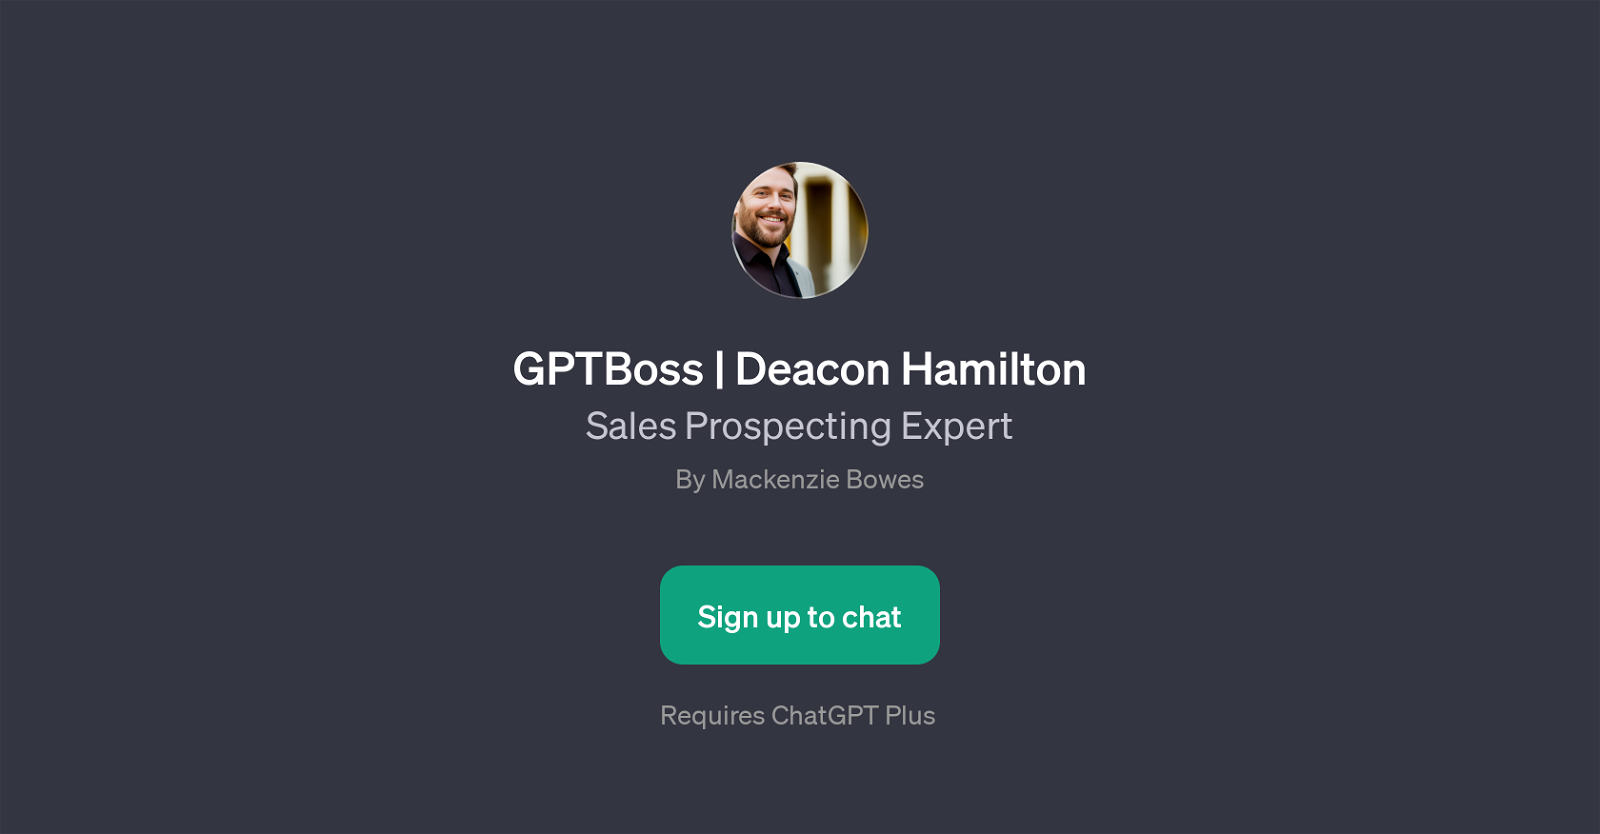 GPTBoss | Deacon Hamilton website